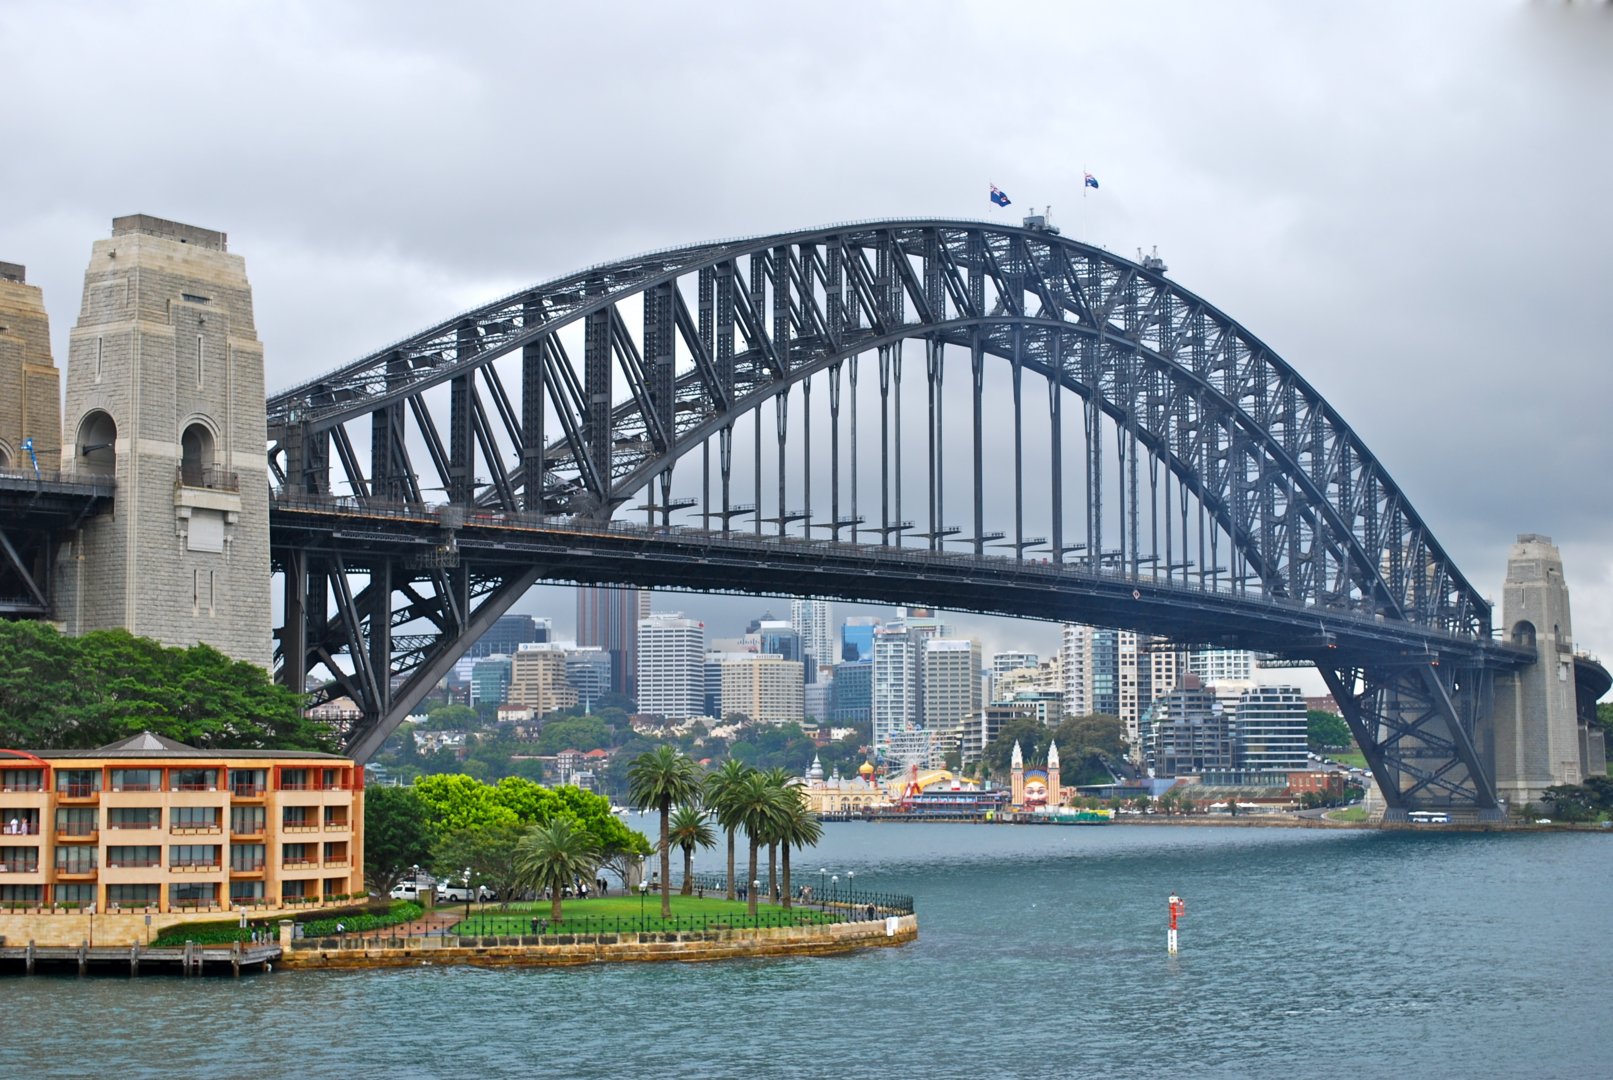 Harbour bridge. Мост Харбор-бридж в Сиднее. Мост Харбор бридж в Австралии. Арочный мост Харбор бридж в Сиднее. Харбор-бридж (Сидней, Австралия).